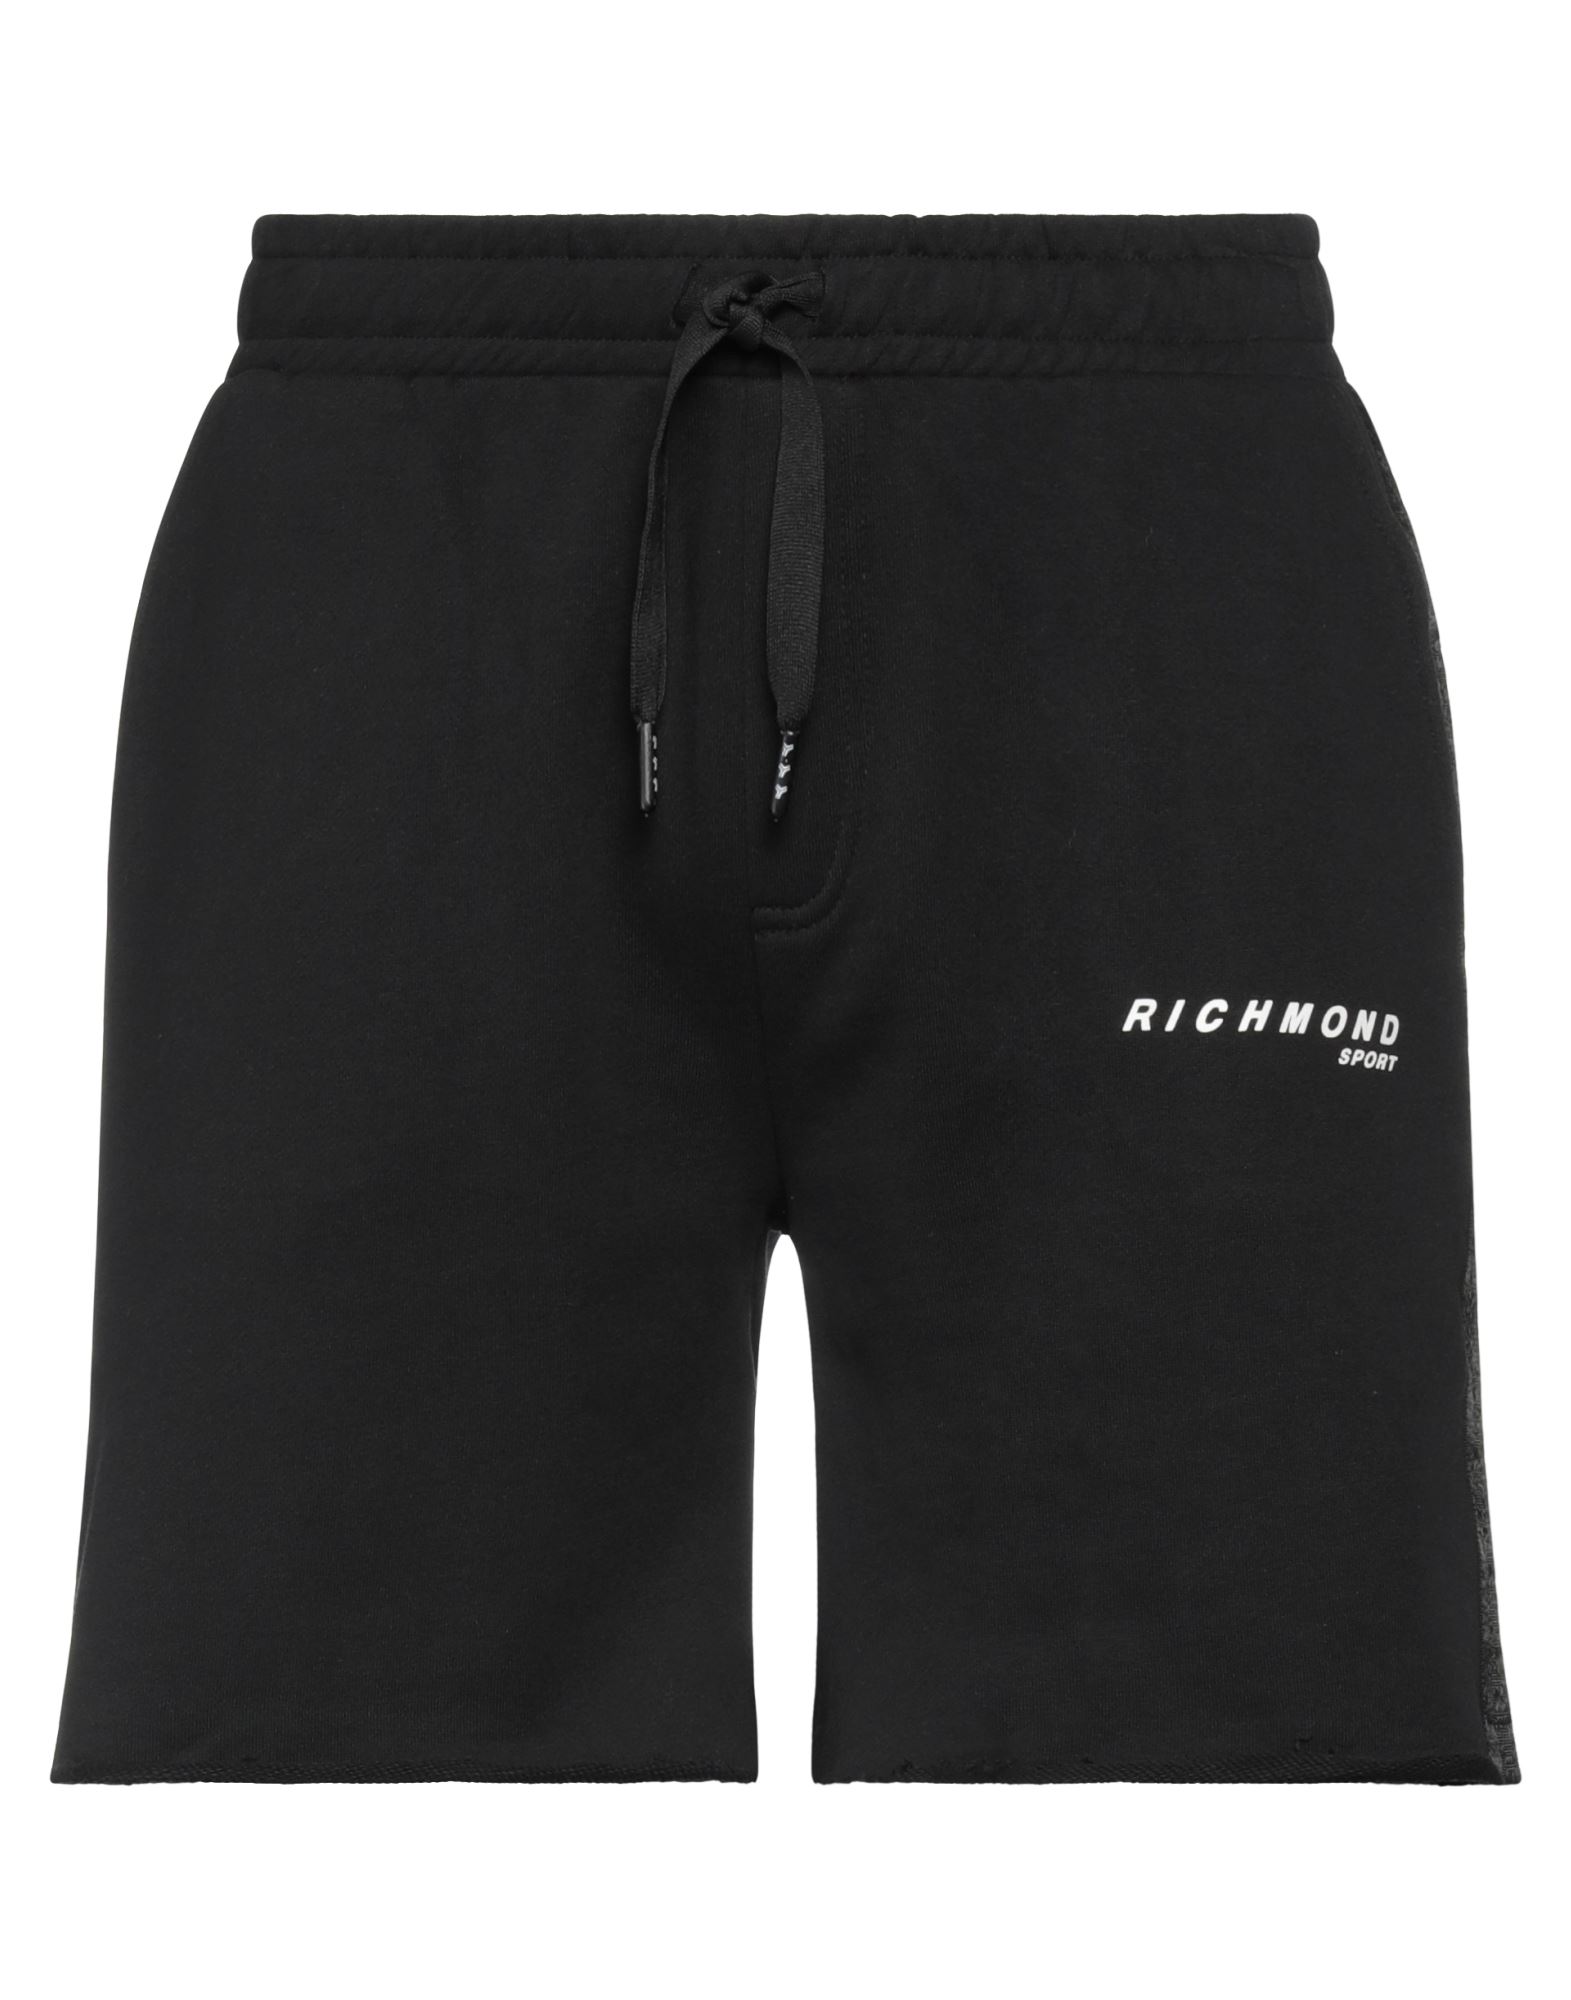 Richmond Man Shorts & Bermuda Shorts Black Size Xl Cotton